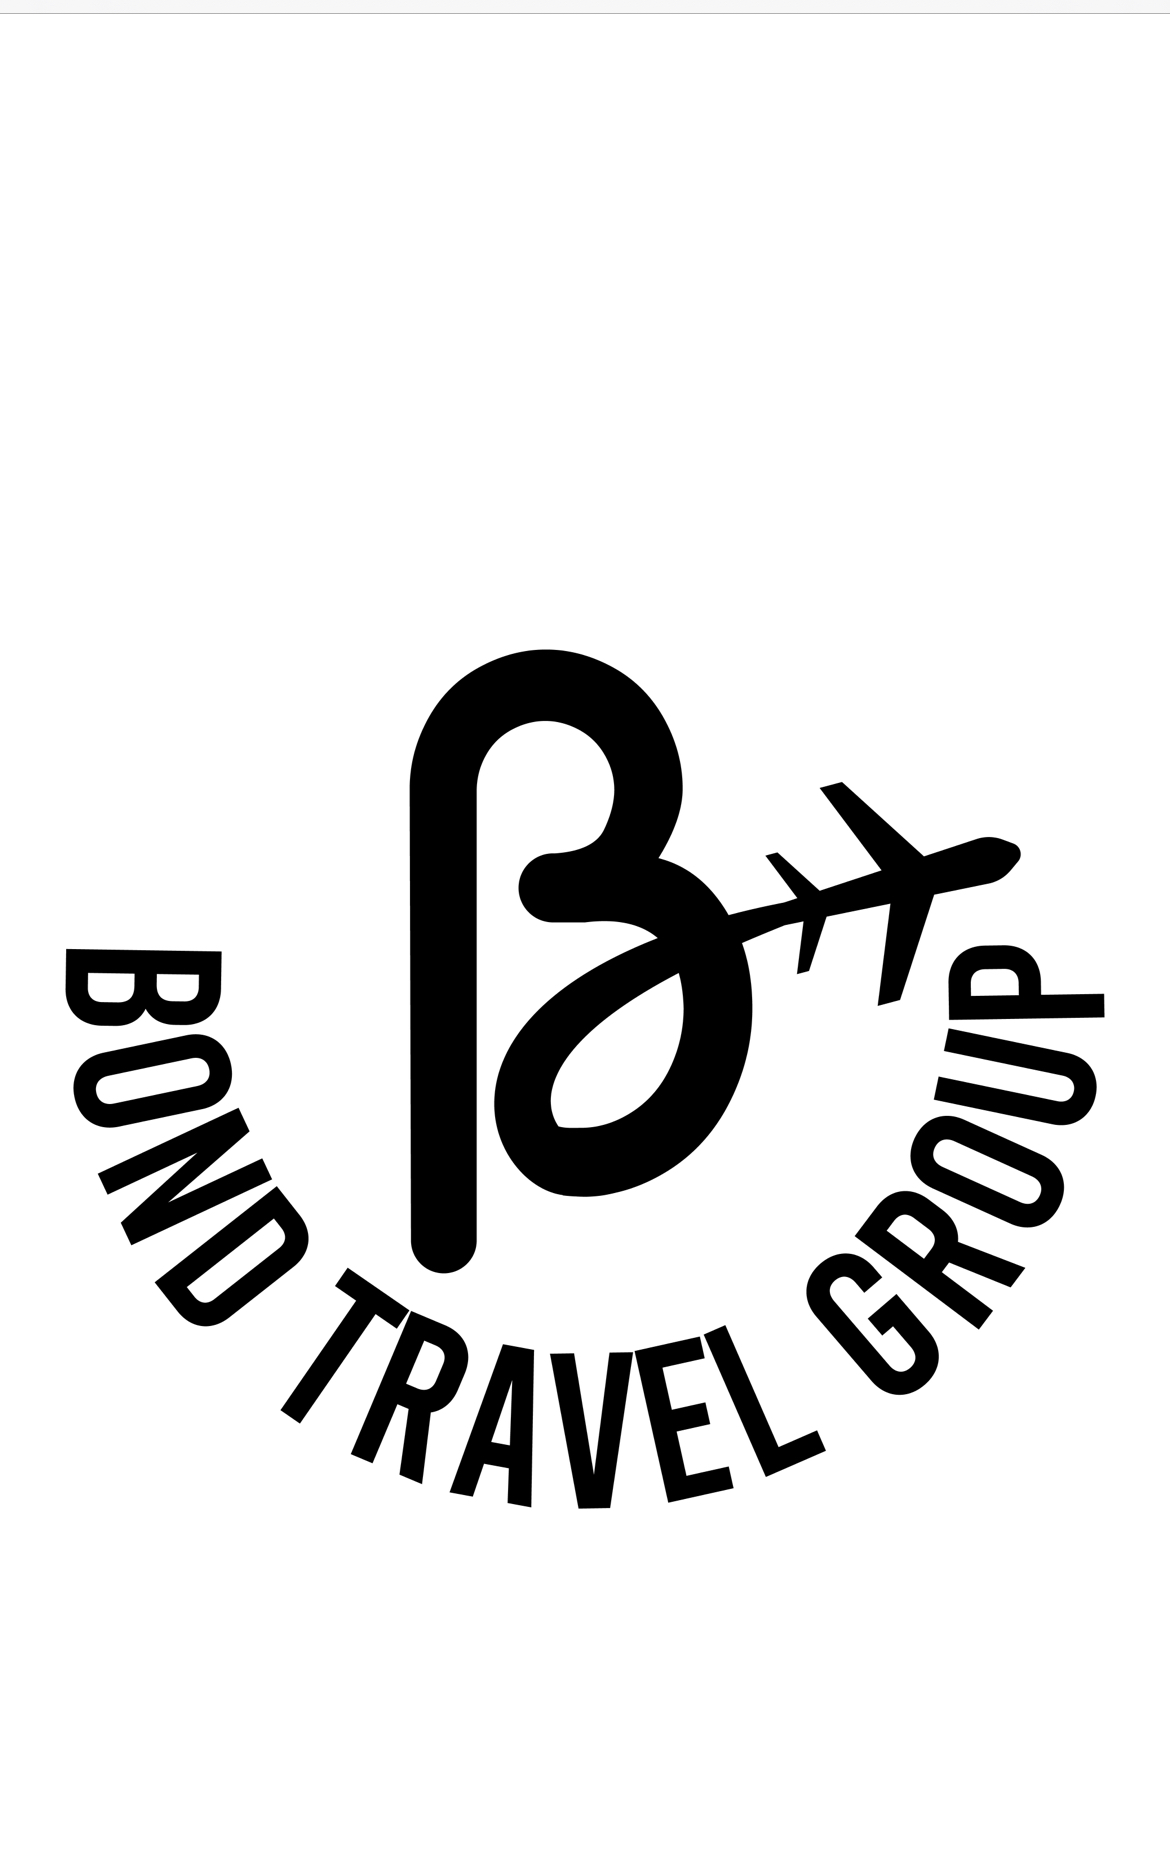 BondTravelGroup